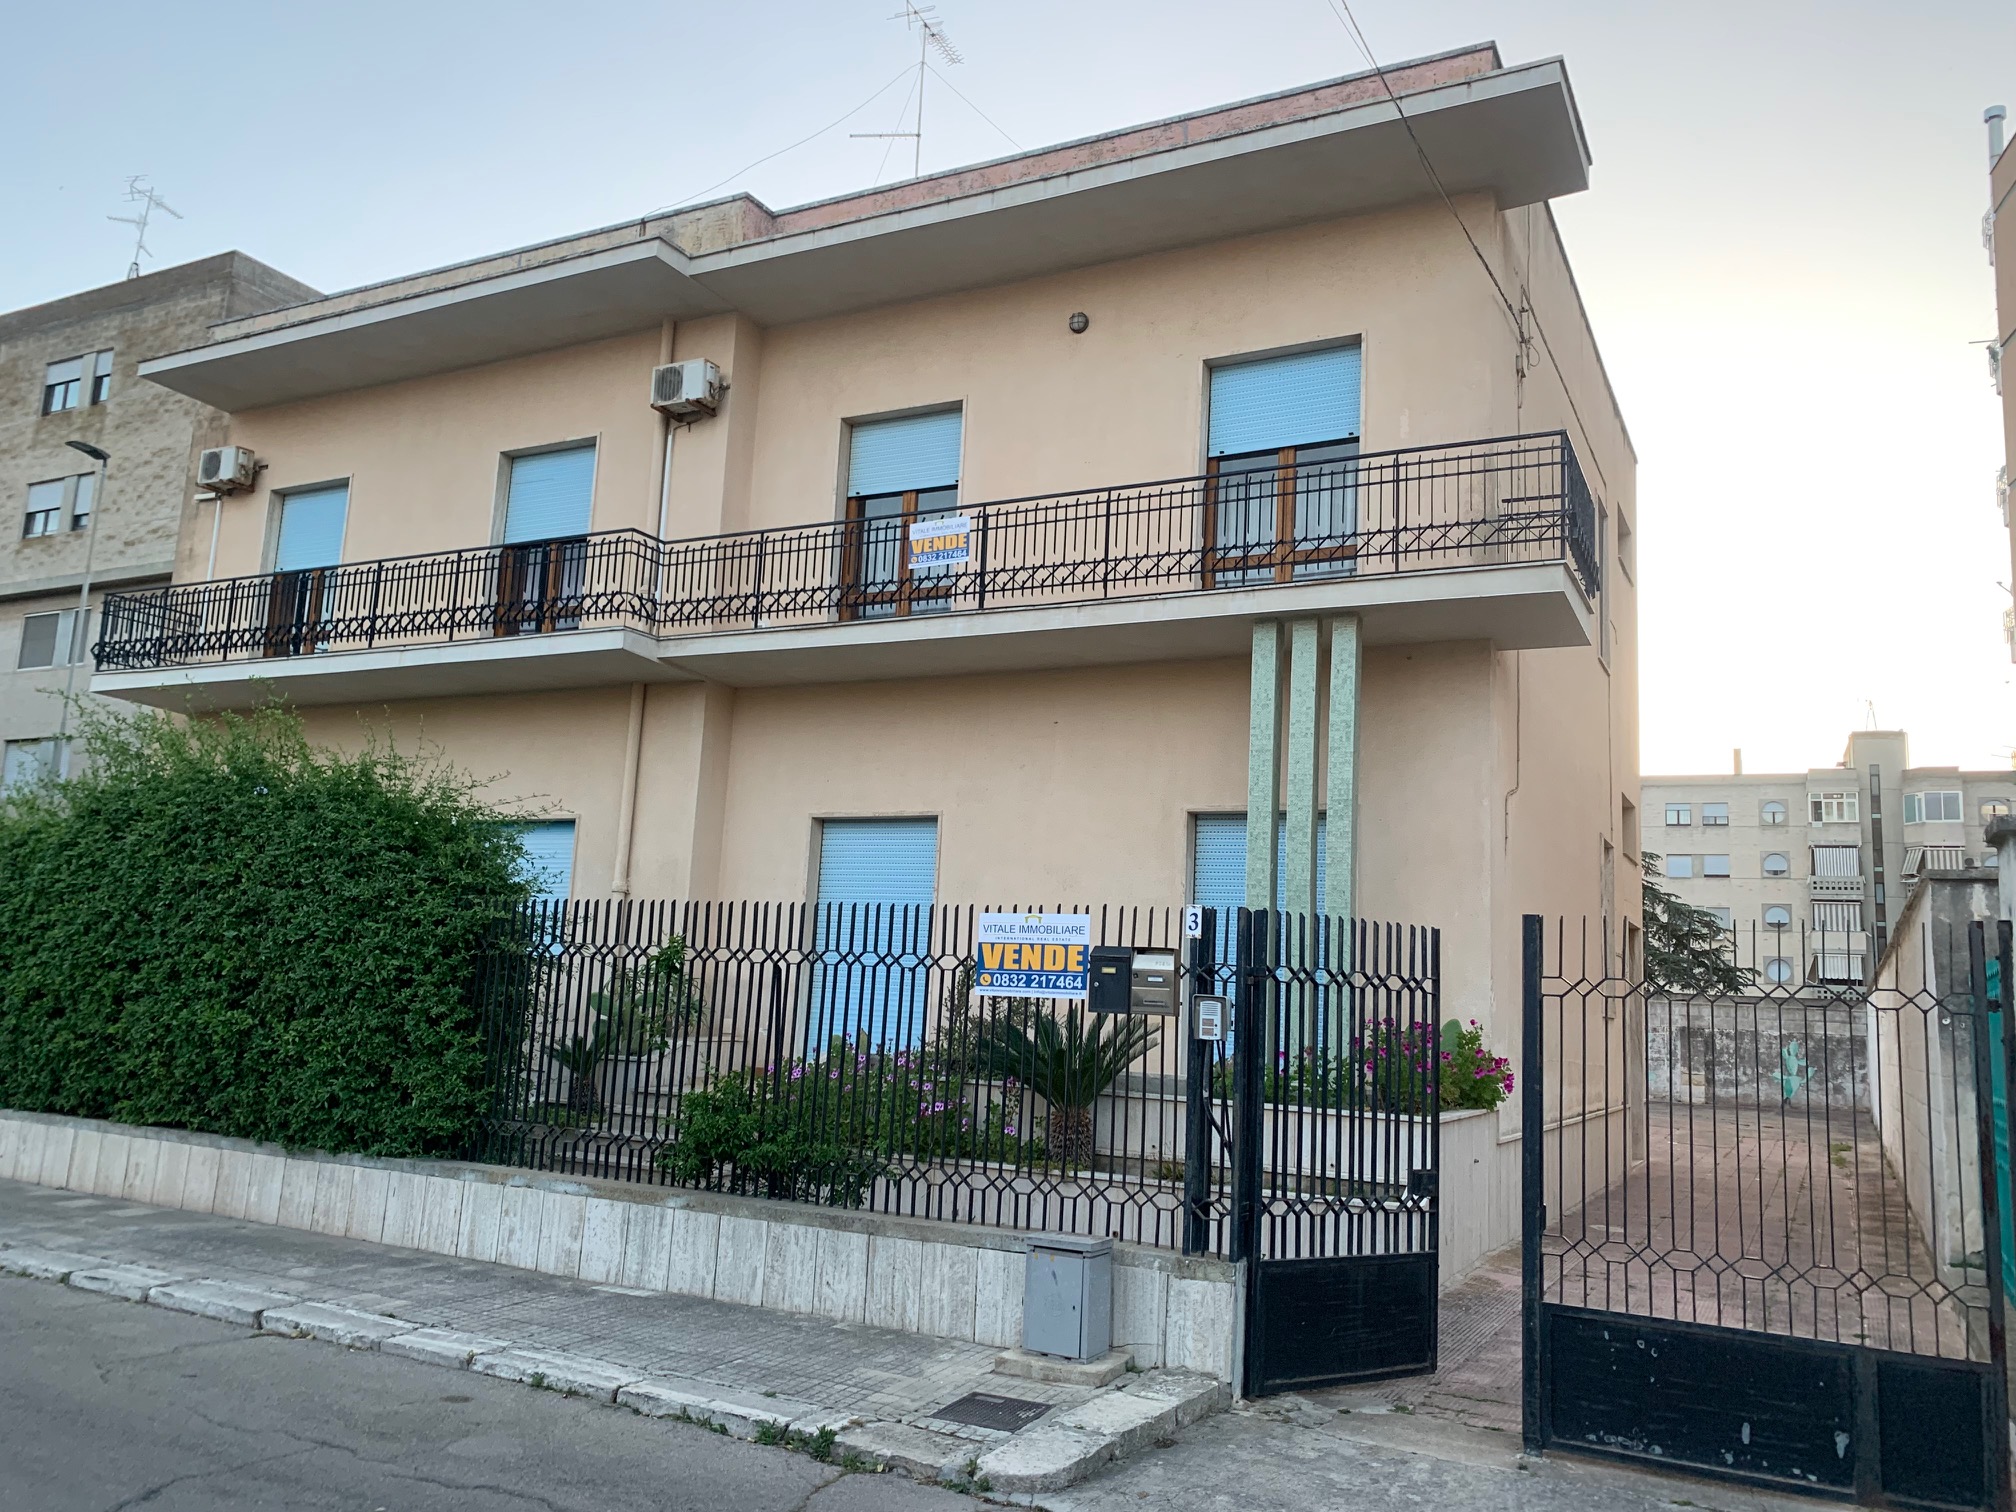 Appartamento Lecce centro